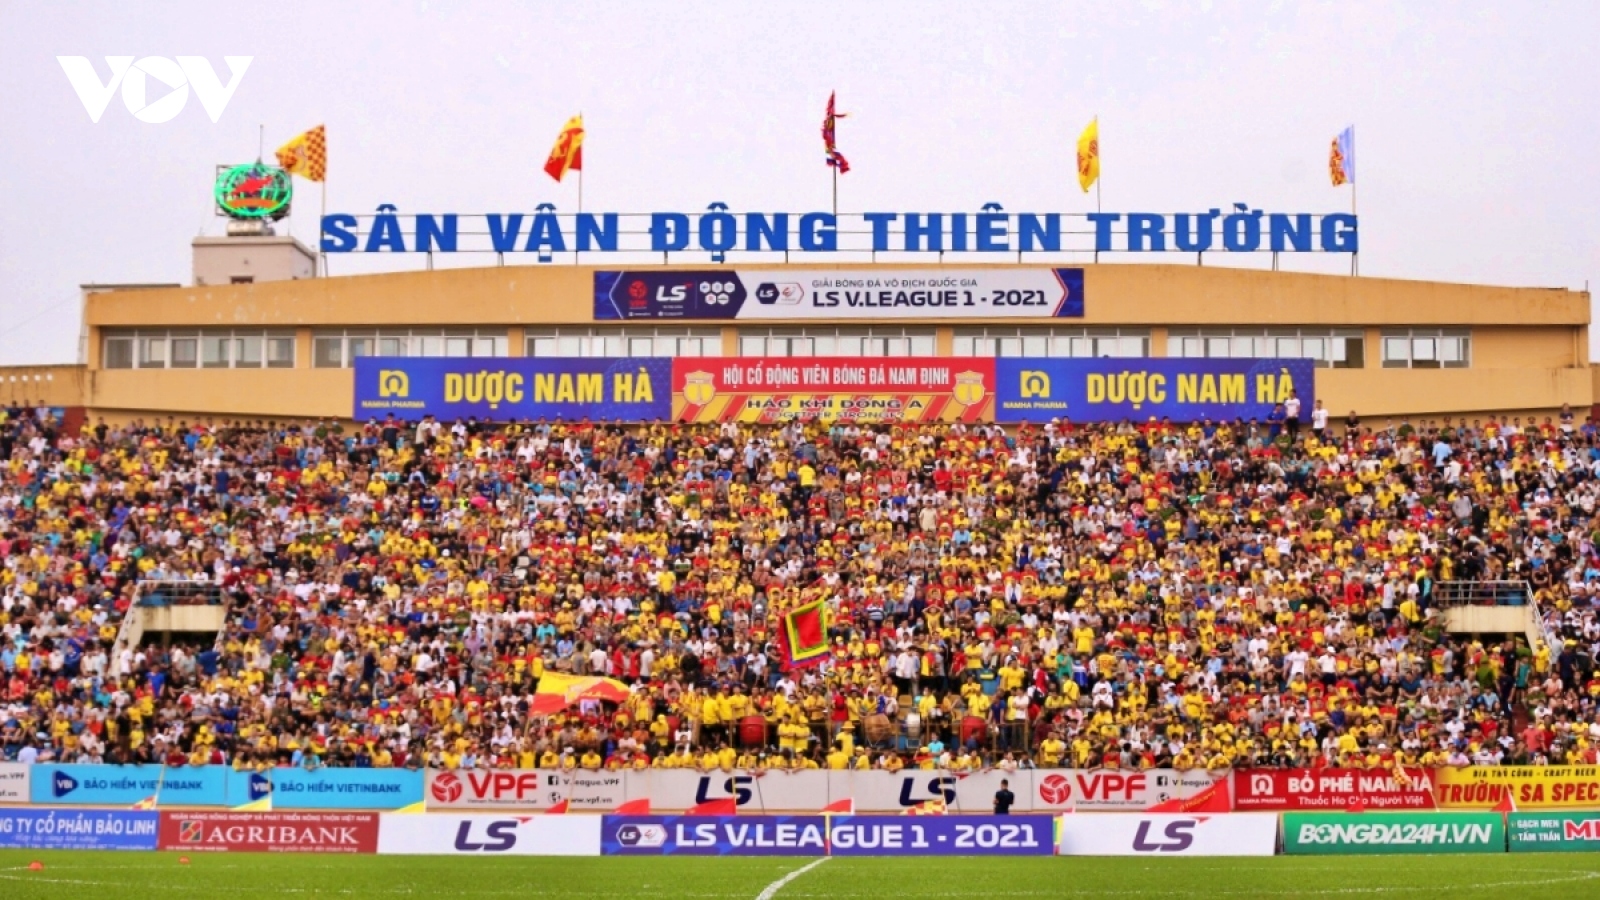 Bóng đá Nam Định có biến, hội cổ động viên chính thức giải thể